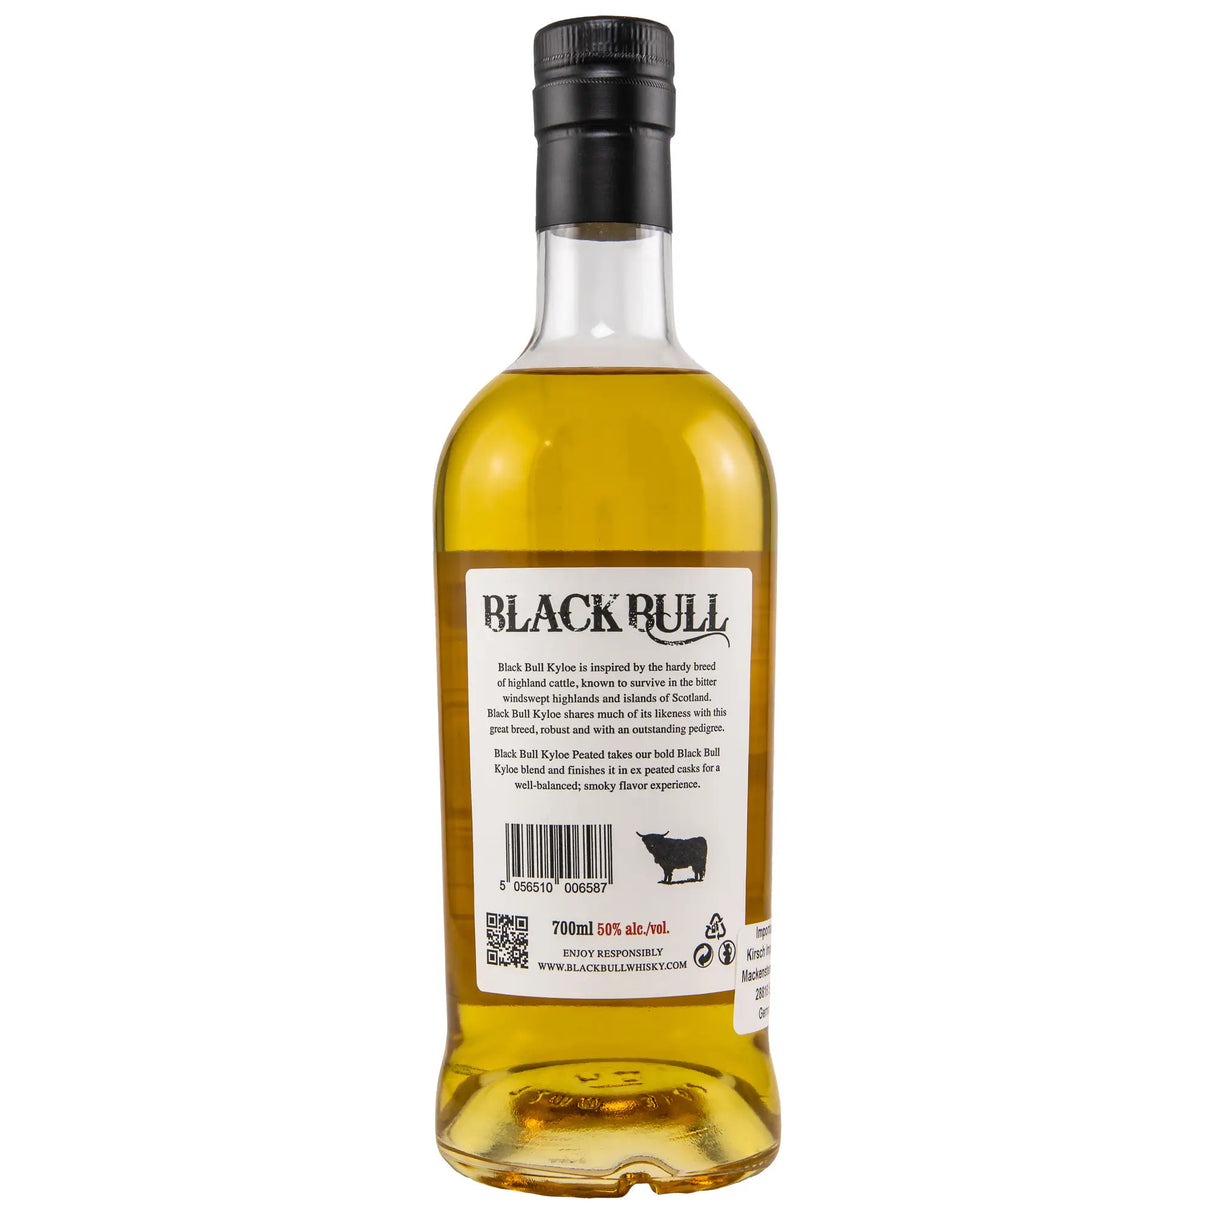 Black Bull Kyloe Peated Finish Blended Whisky